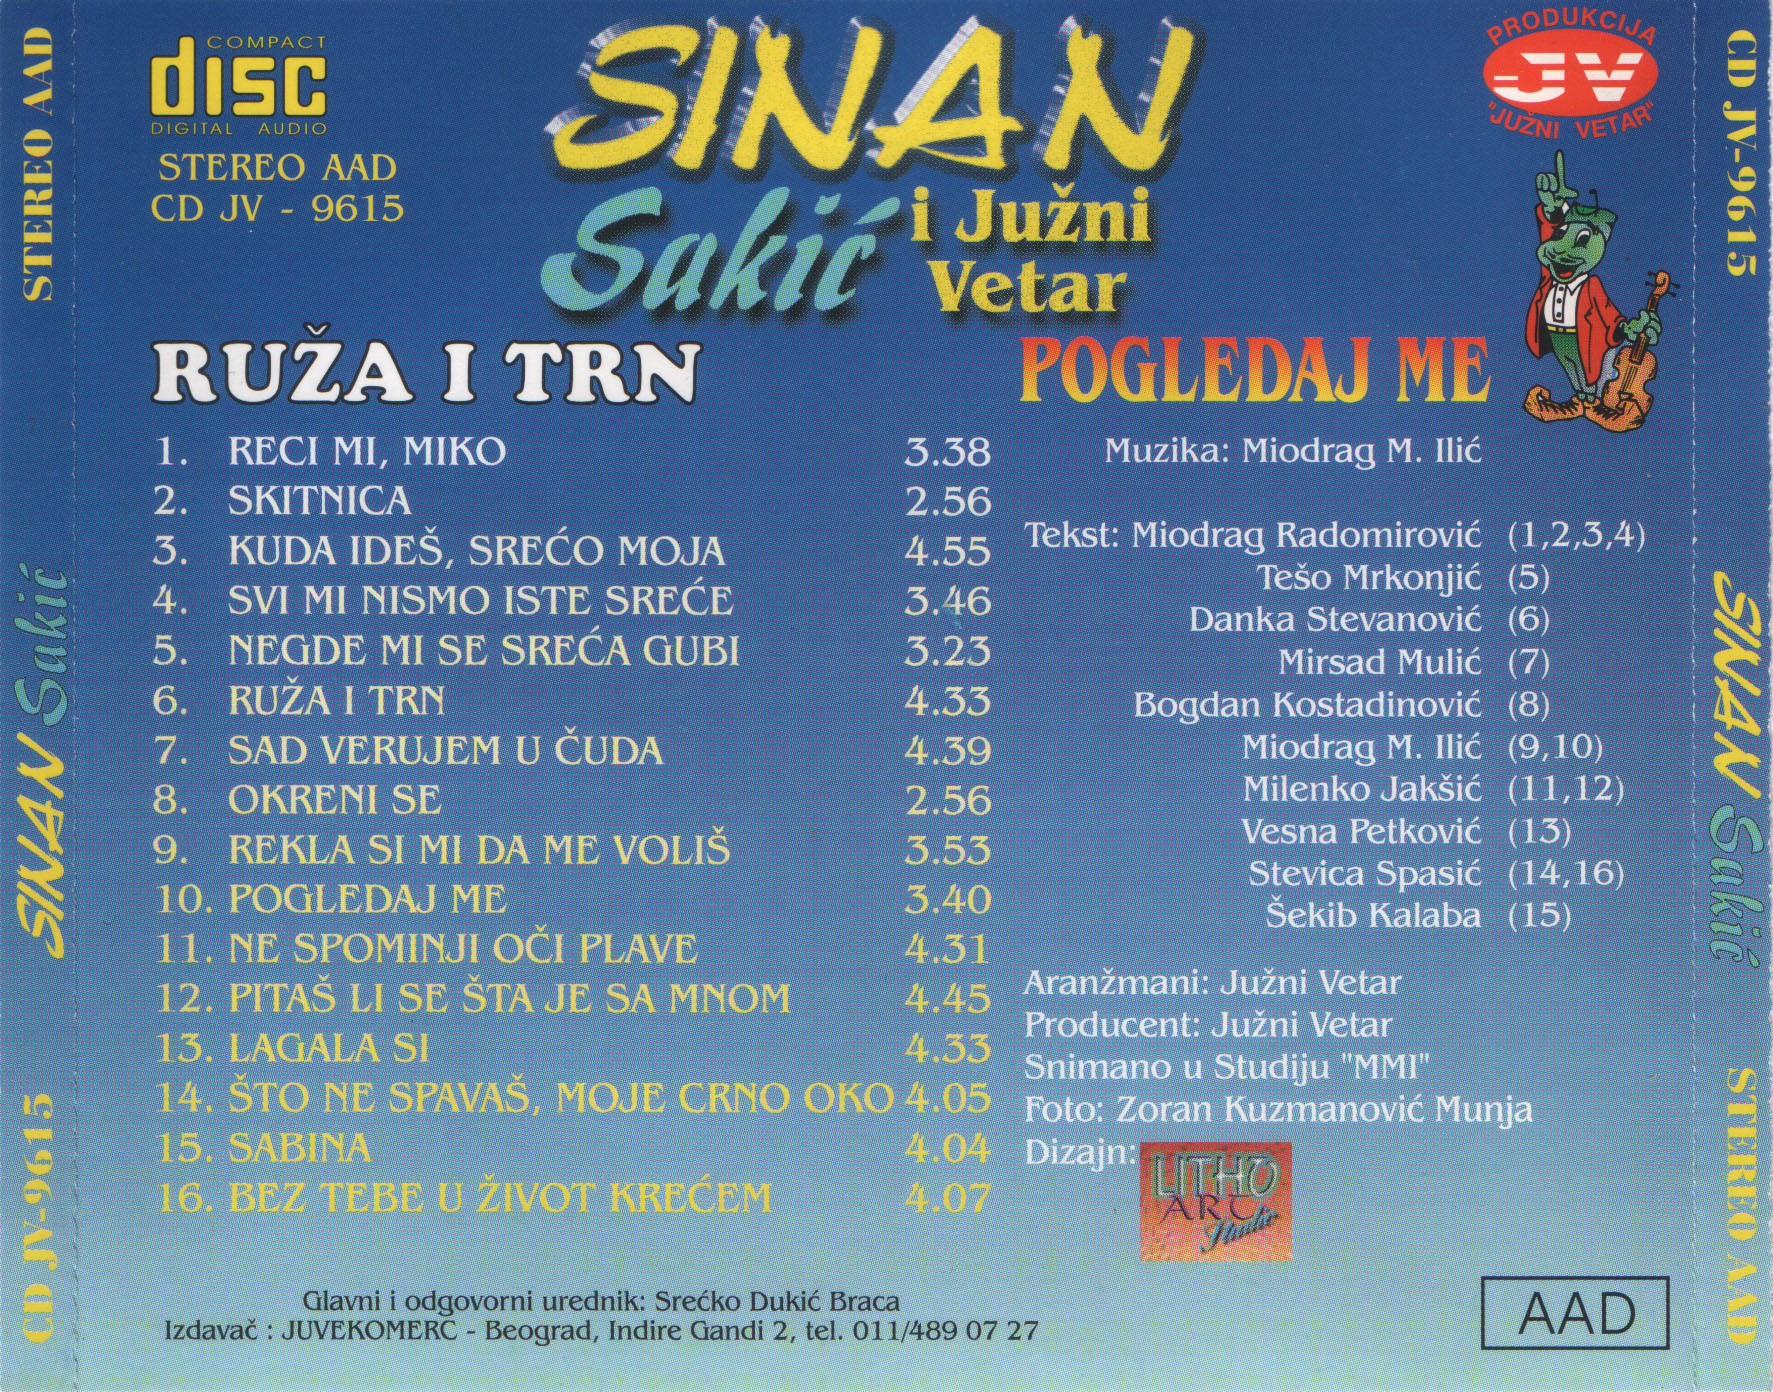 Sinan Sakic 1996 Zadnja